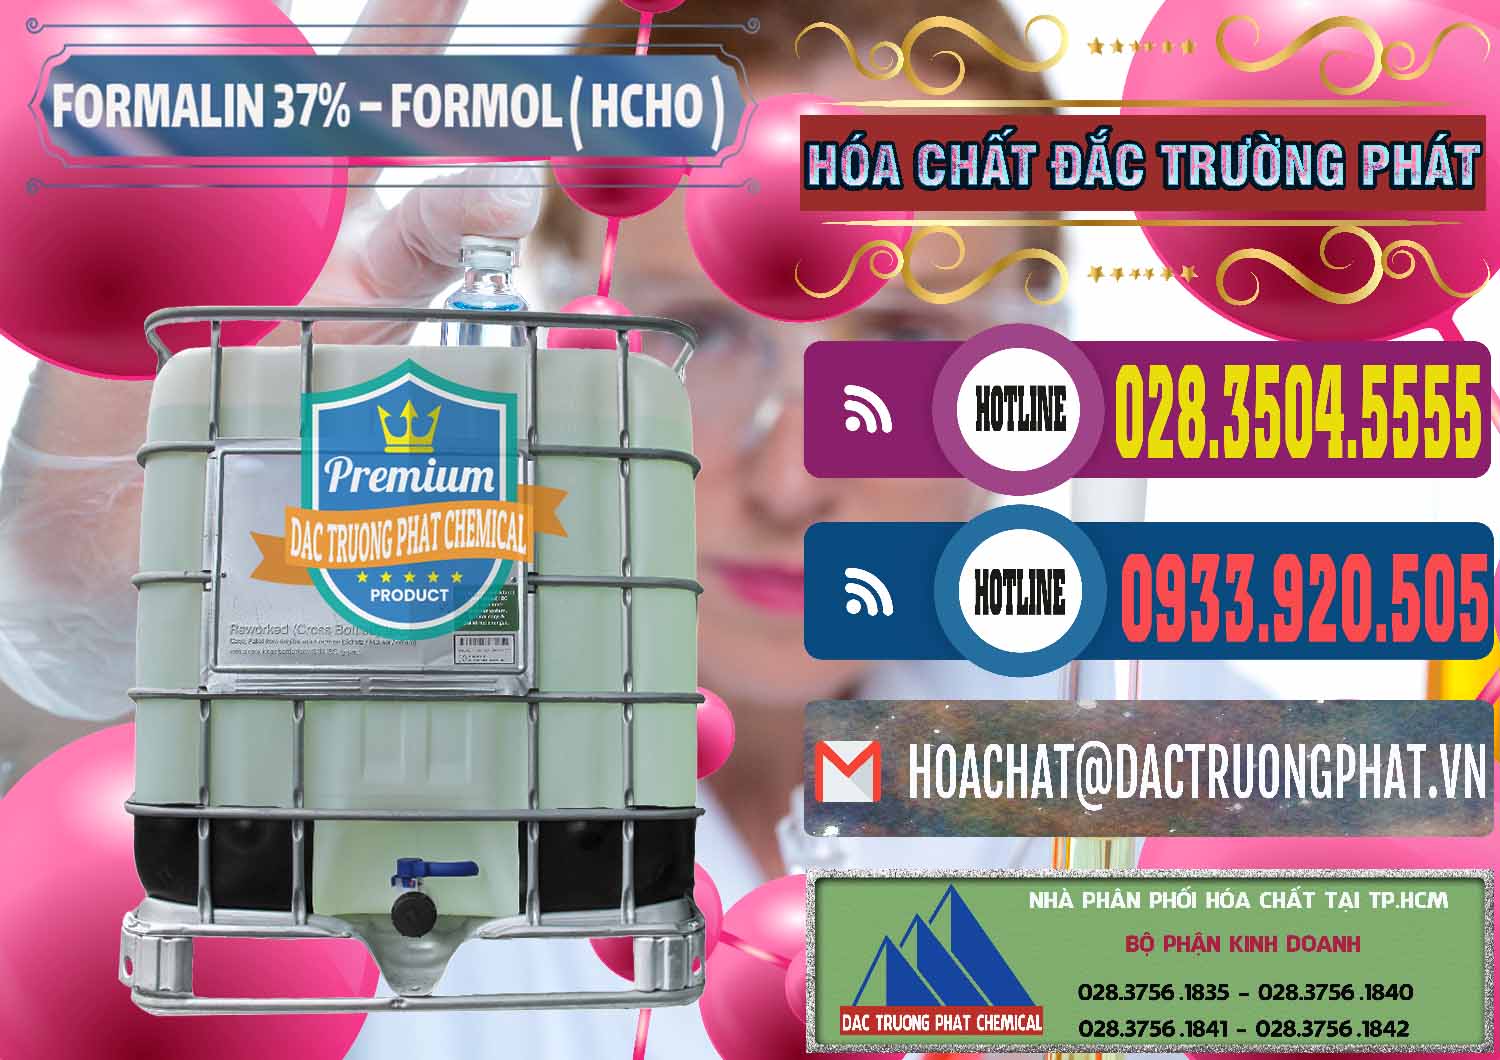 Cty chuyên bán _ cung ứng Formalin - Formol ( HCHO ) 37% Việt Nam - 0187 - Chuyên cung cấp và bán hóa chất tại TP.HCM - muabanhoachat.com.vn